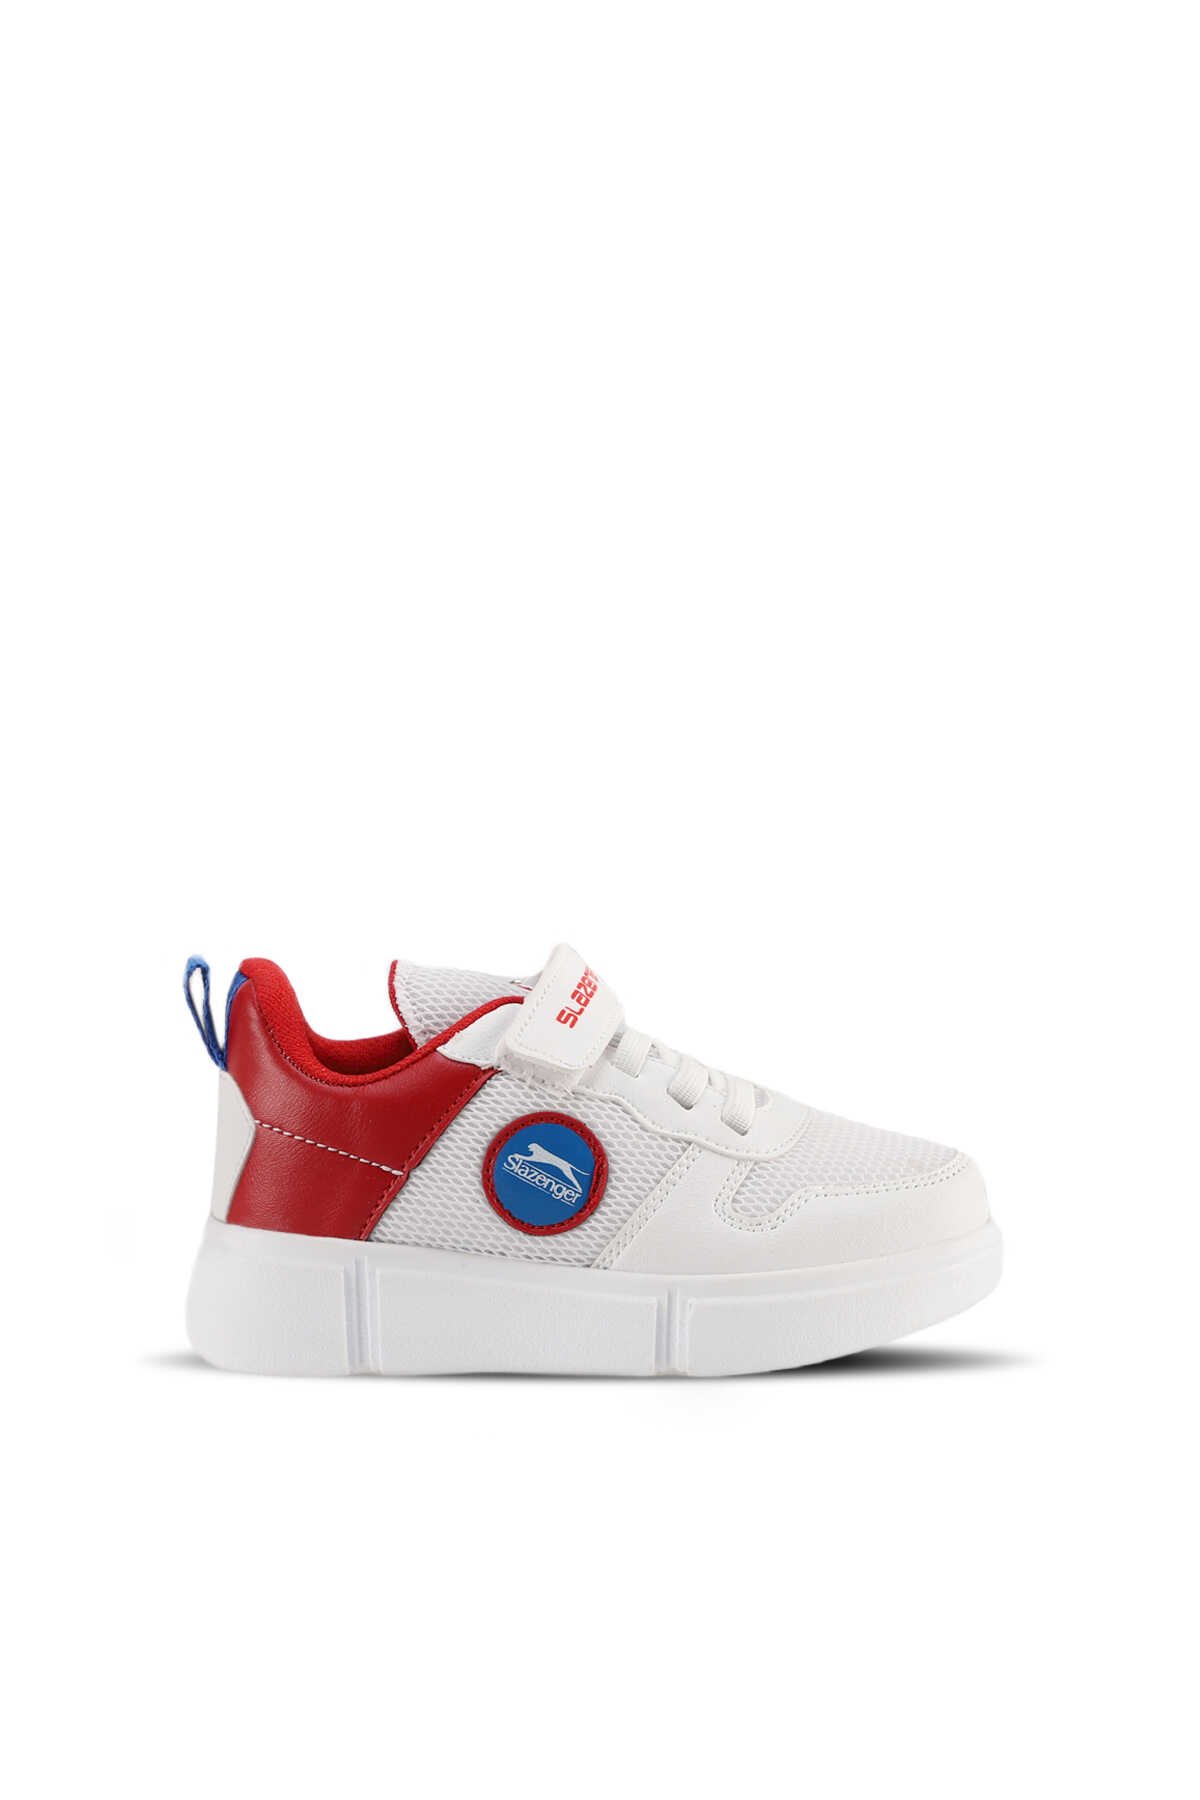 Slazenger - Slazenger KAVITHA KTN Sneaker Unisex Çocuk Ayakkabı Beyaz / Kırmızı